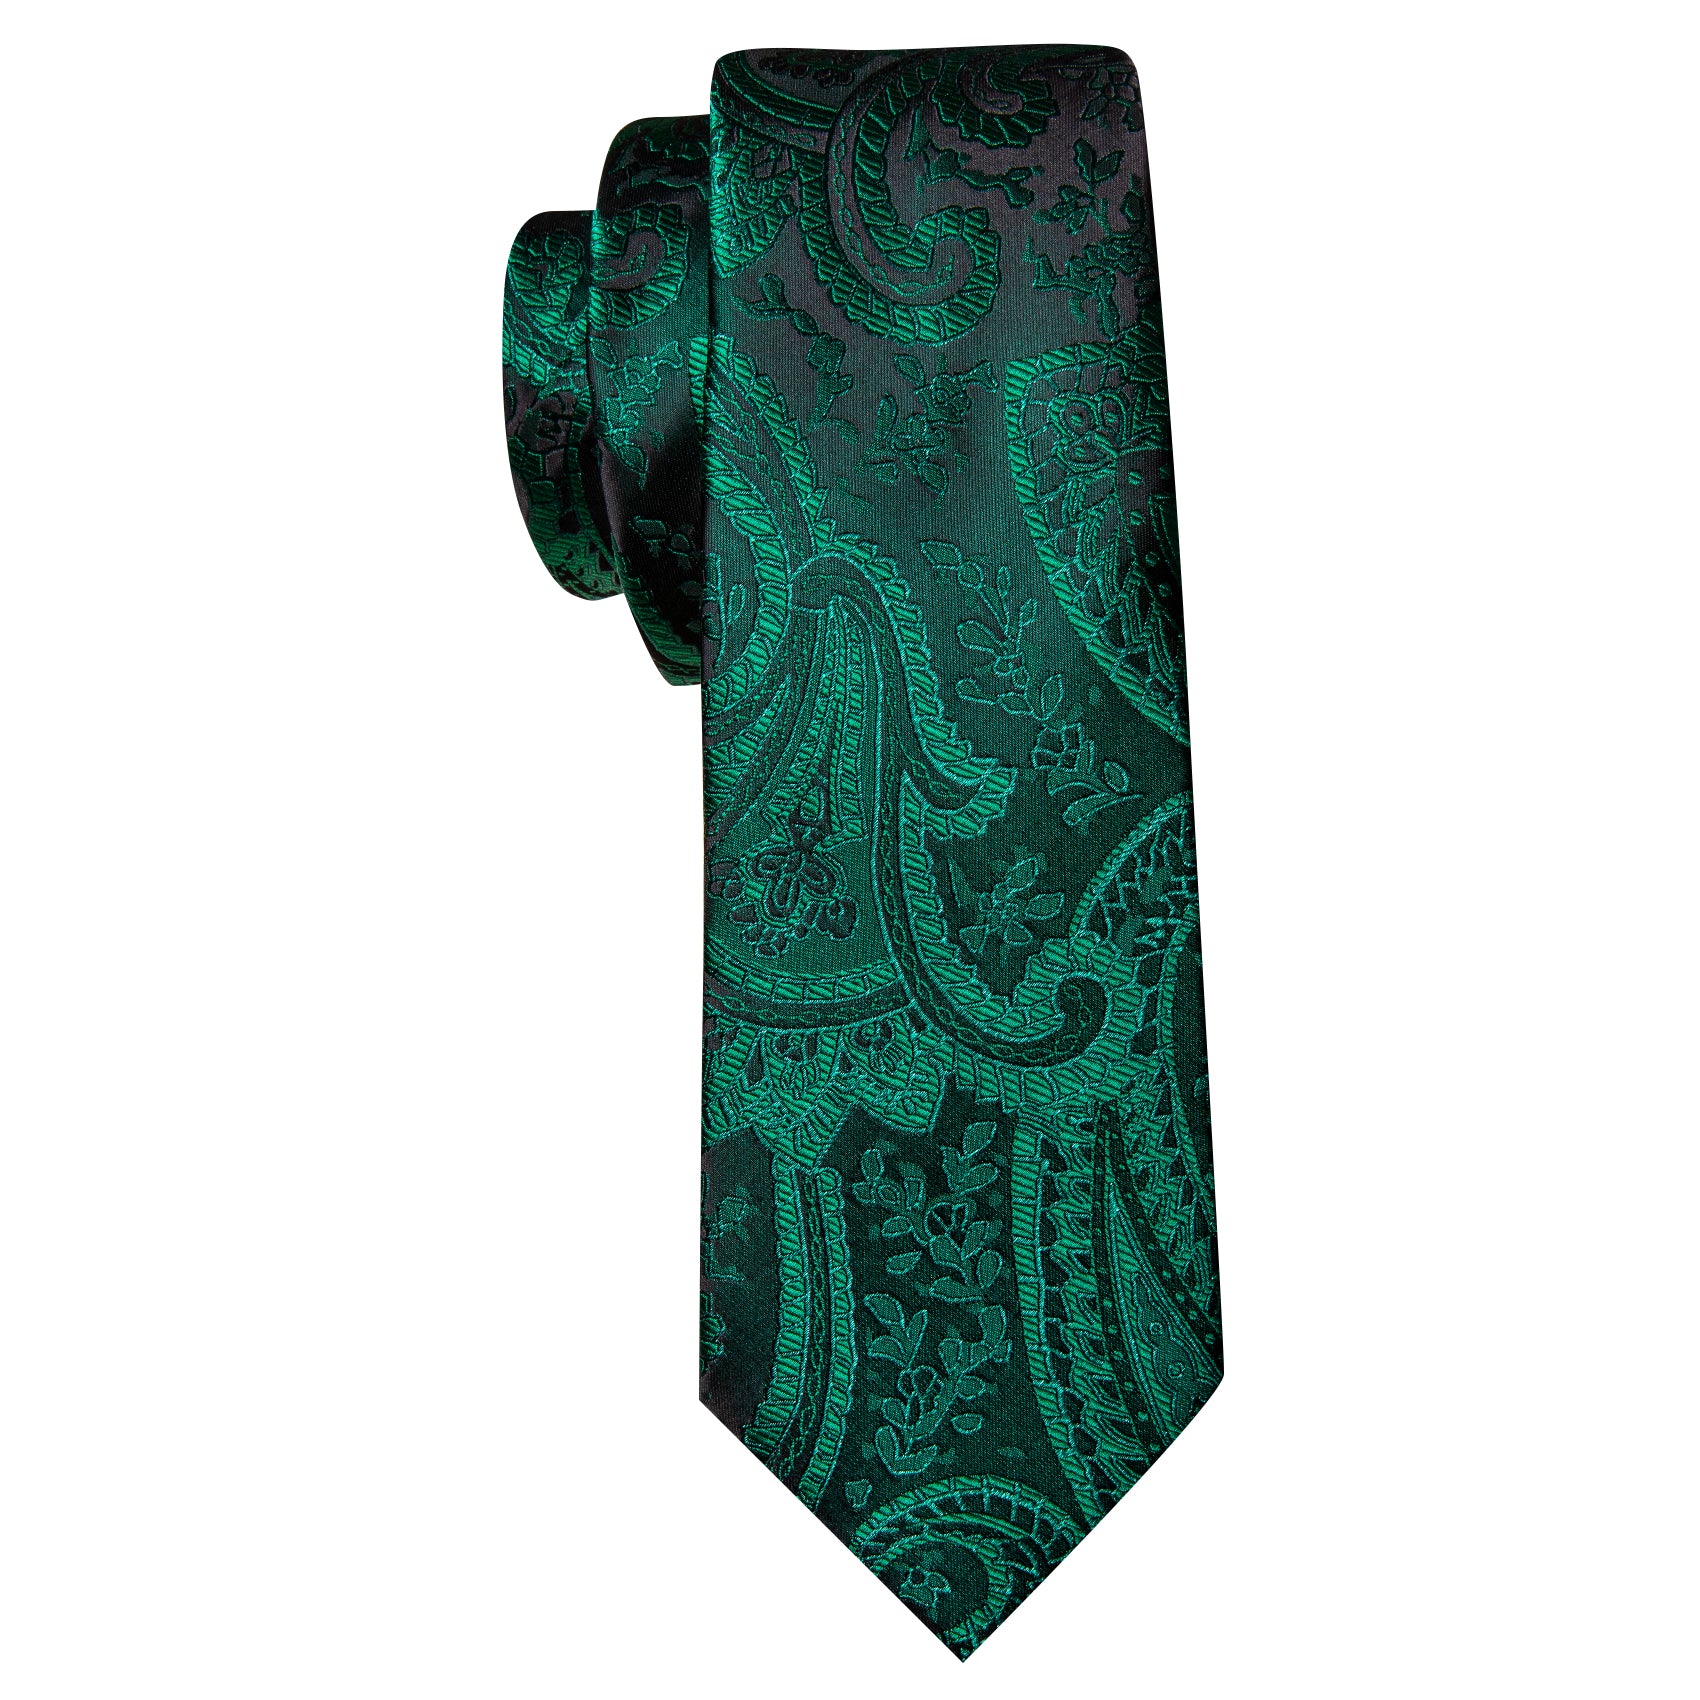 Green Tie Paisley Jacquard Silk Tie Handkerchief Cufflinks Set